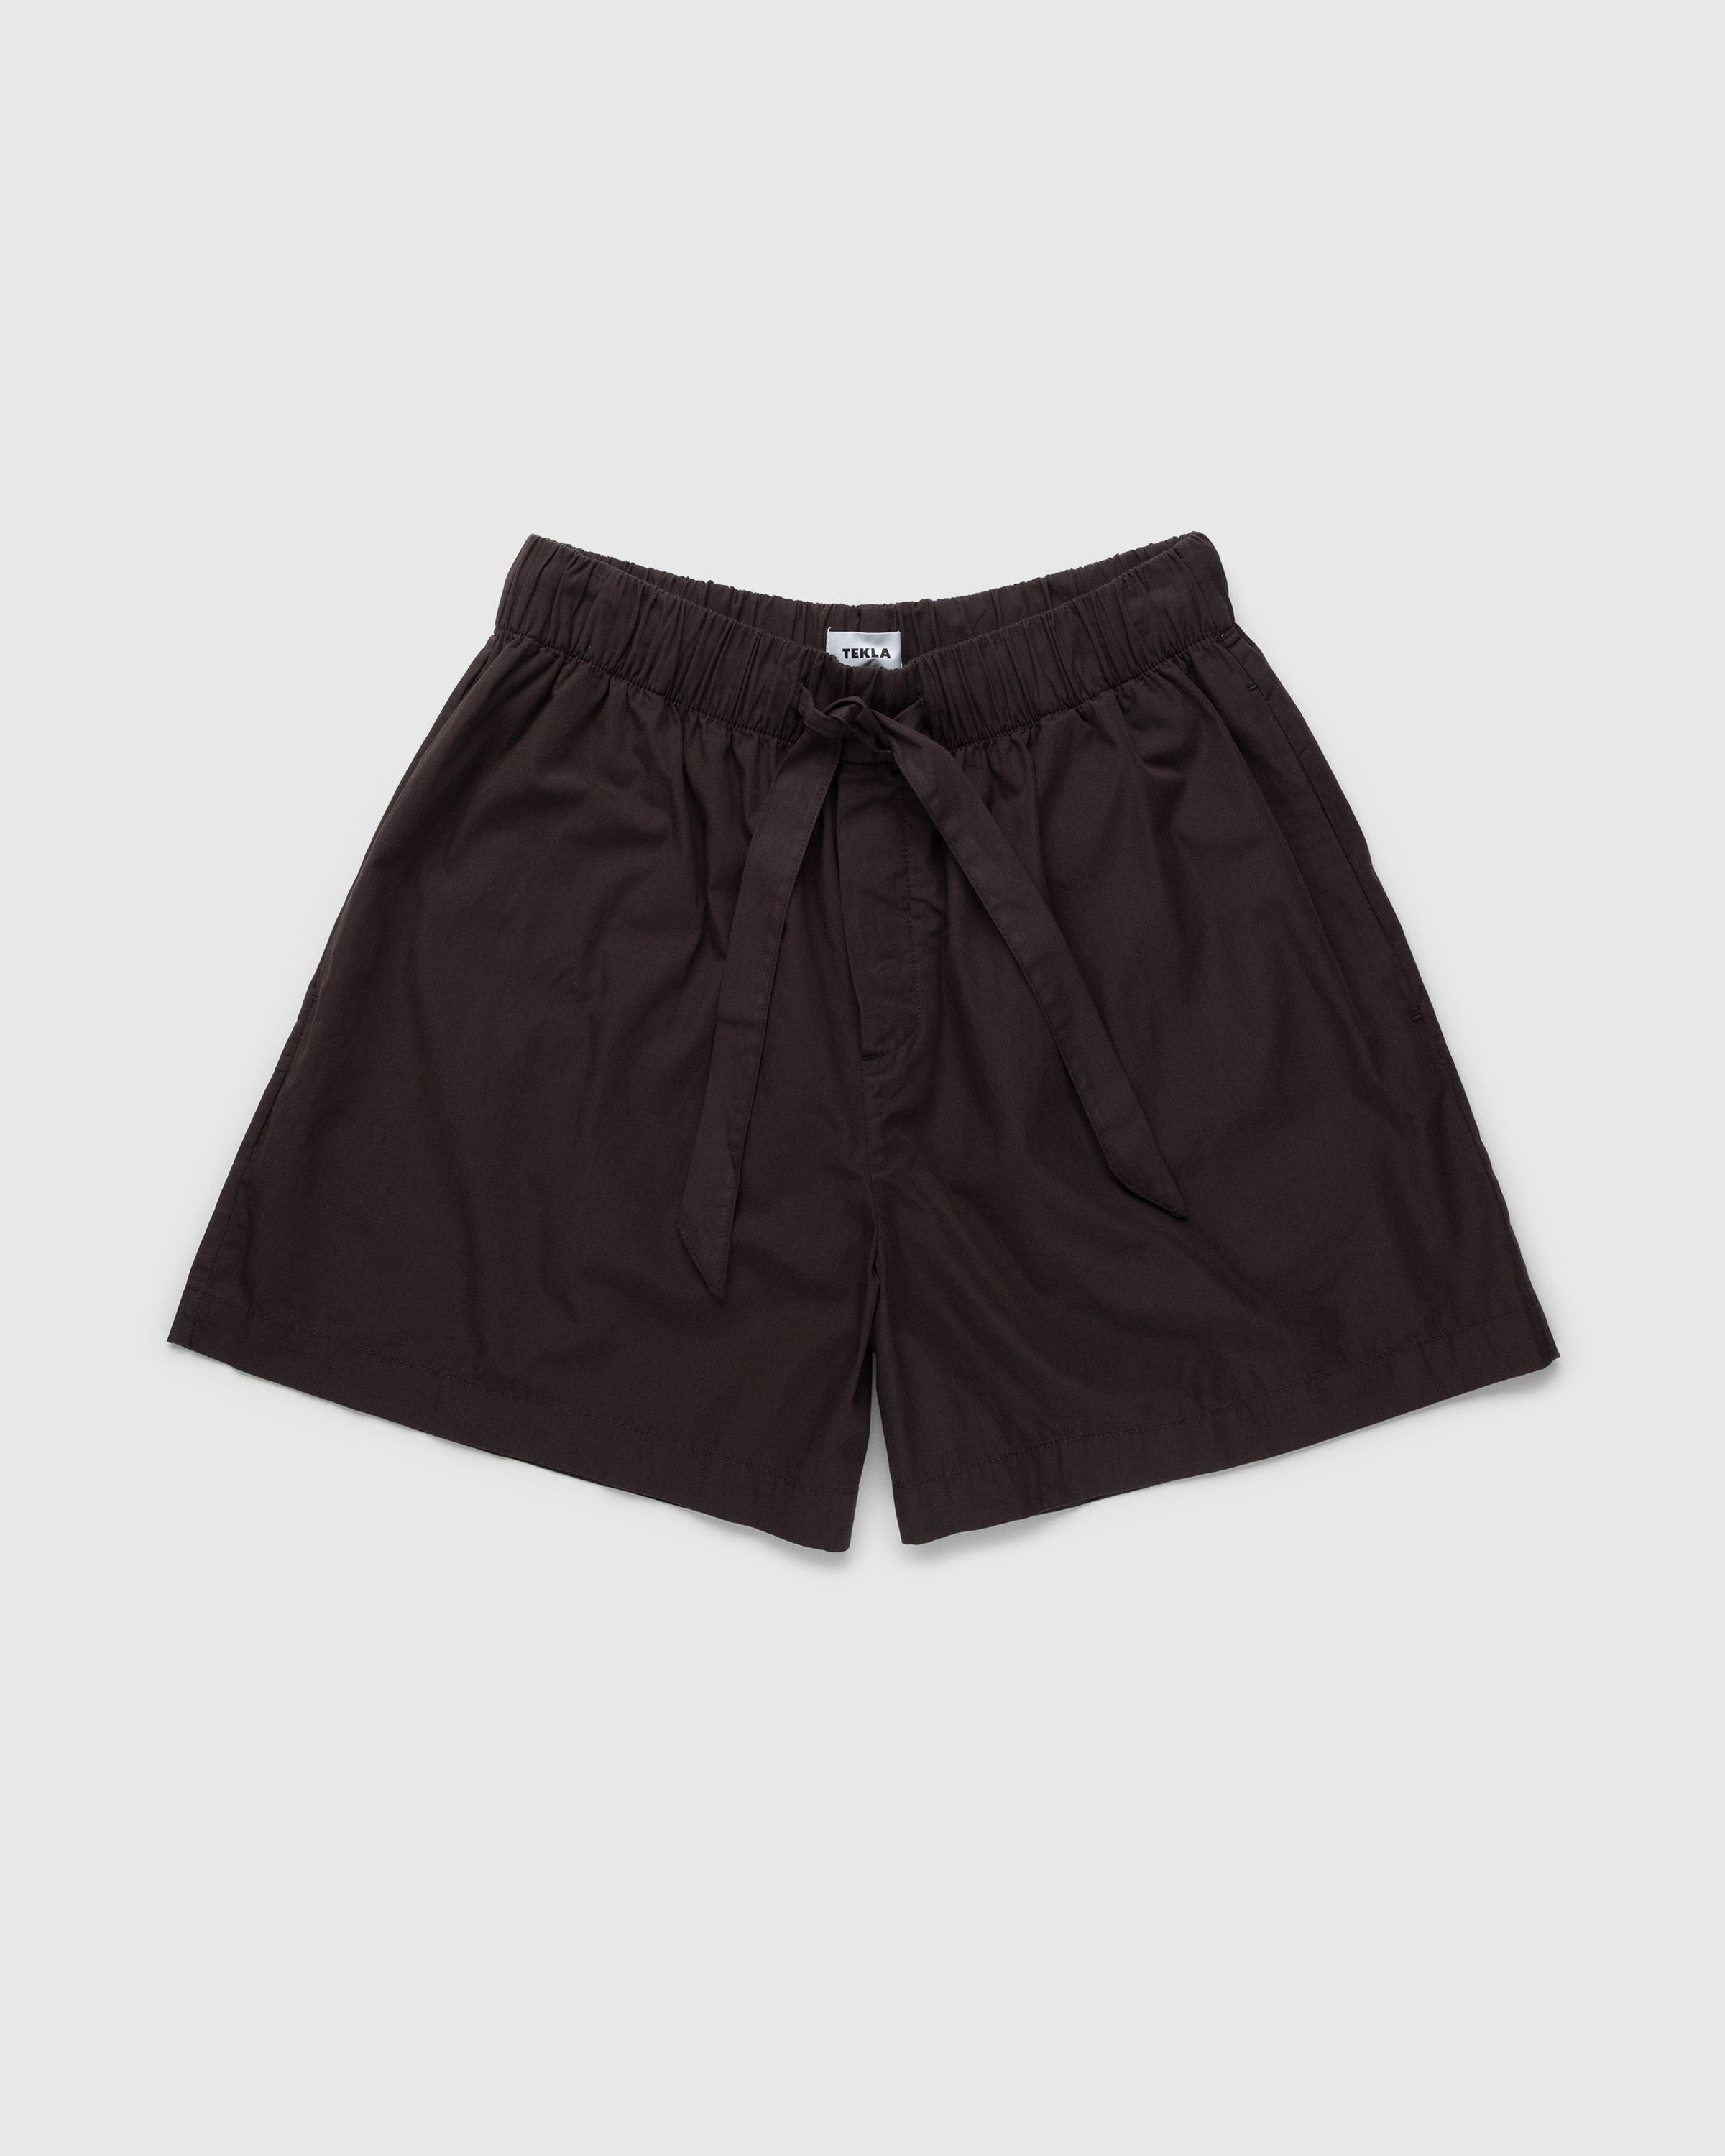 Tekla - Cotton Poplin Pyjamas Shorts Coffee - Clothing - Brown - Image 1